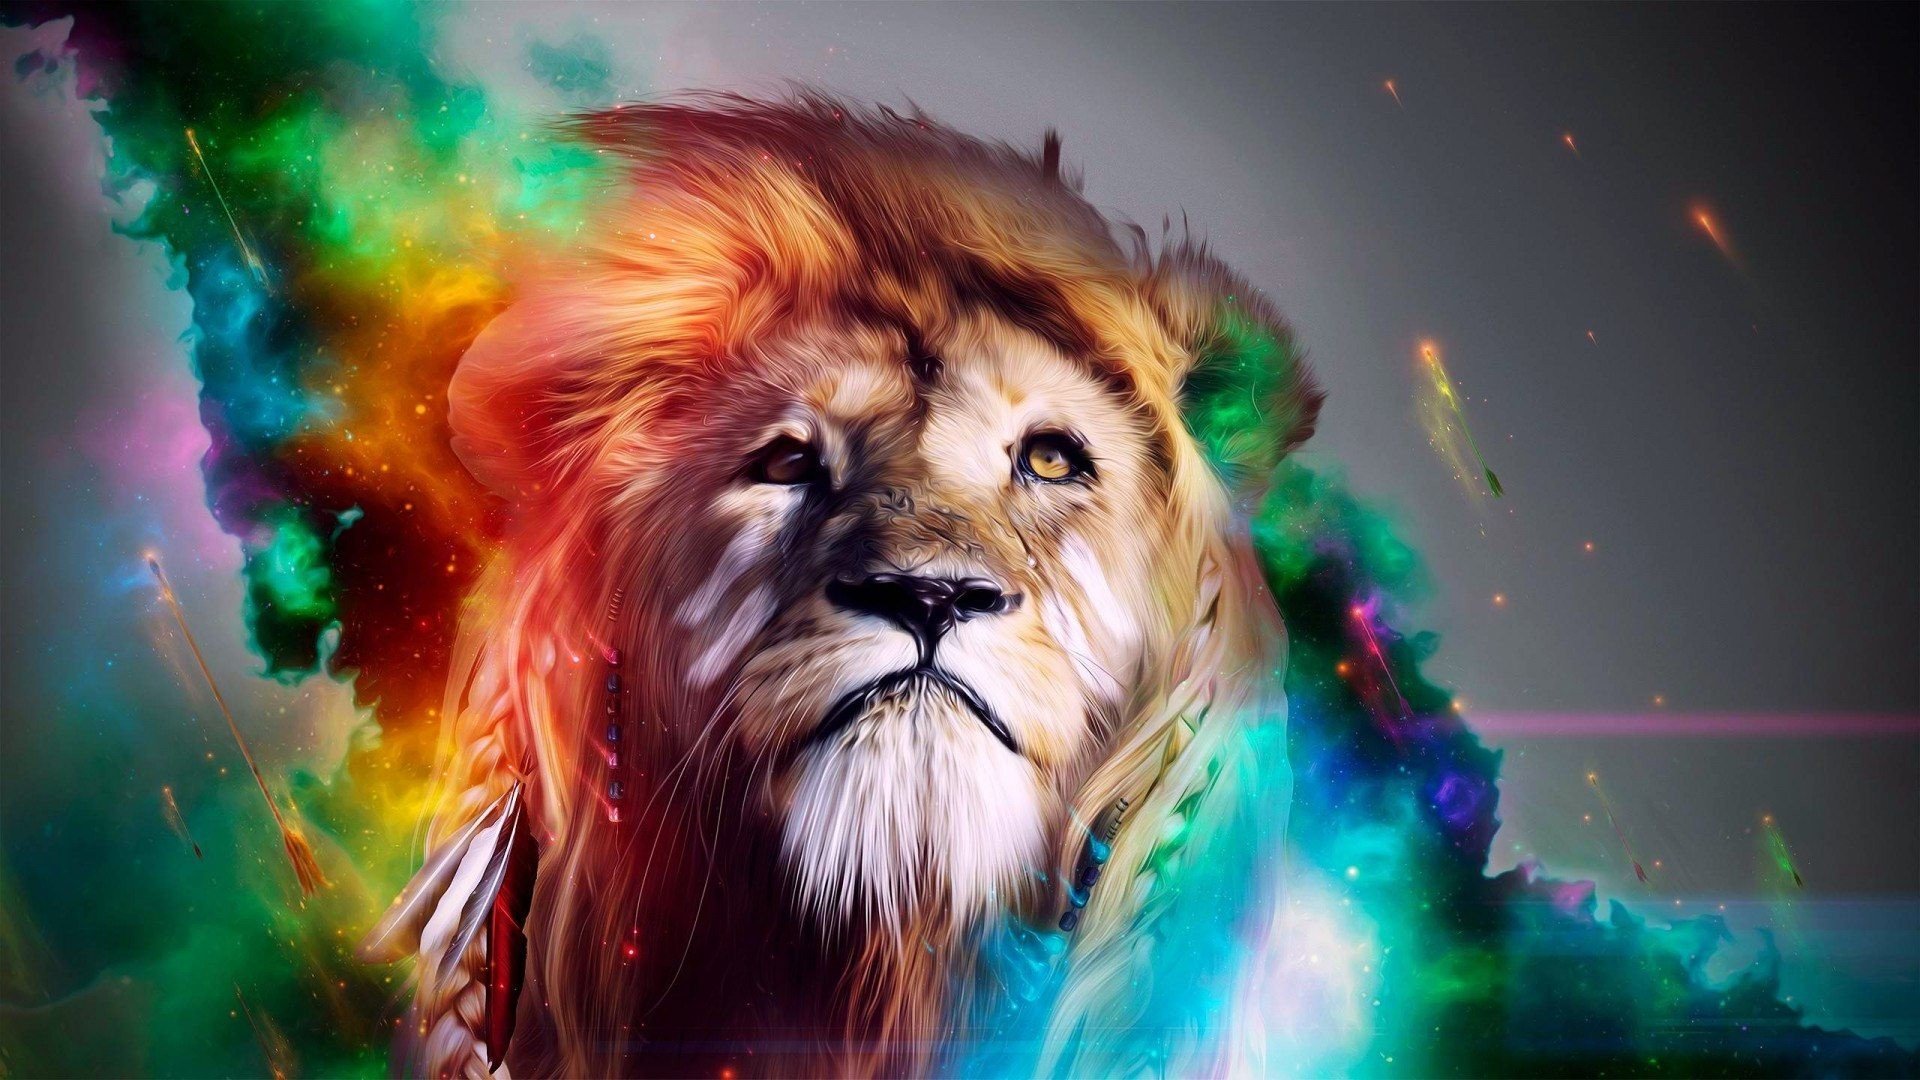 Lion Art Wallpaper - Abstract Lion - HD Wallpaper 